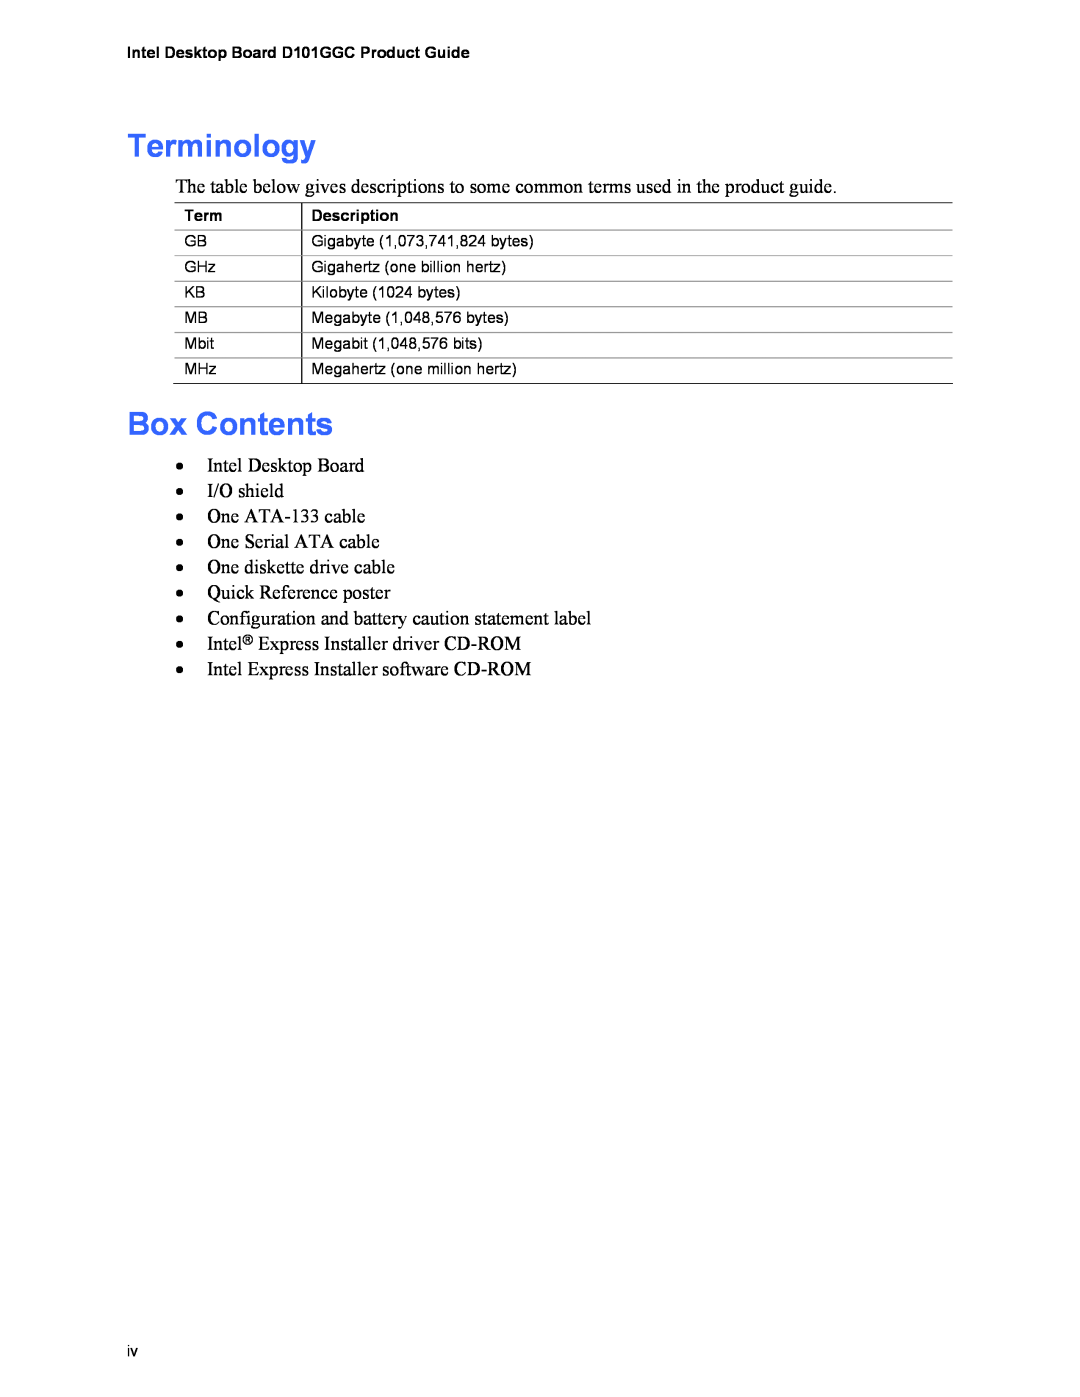 Intel D101GGC manual Terminology, Box Contents 